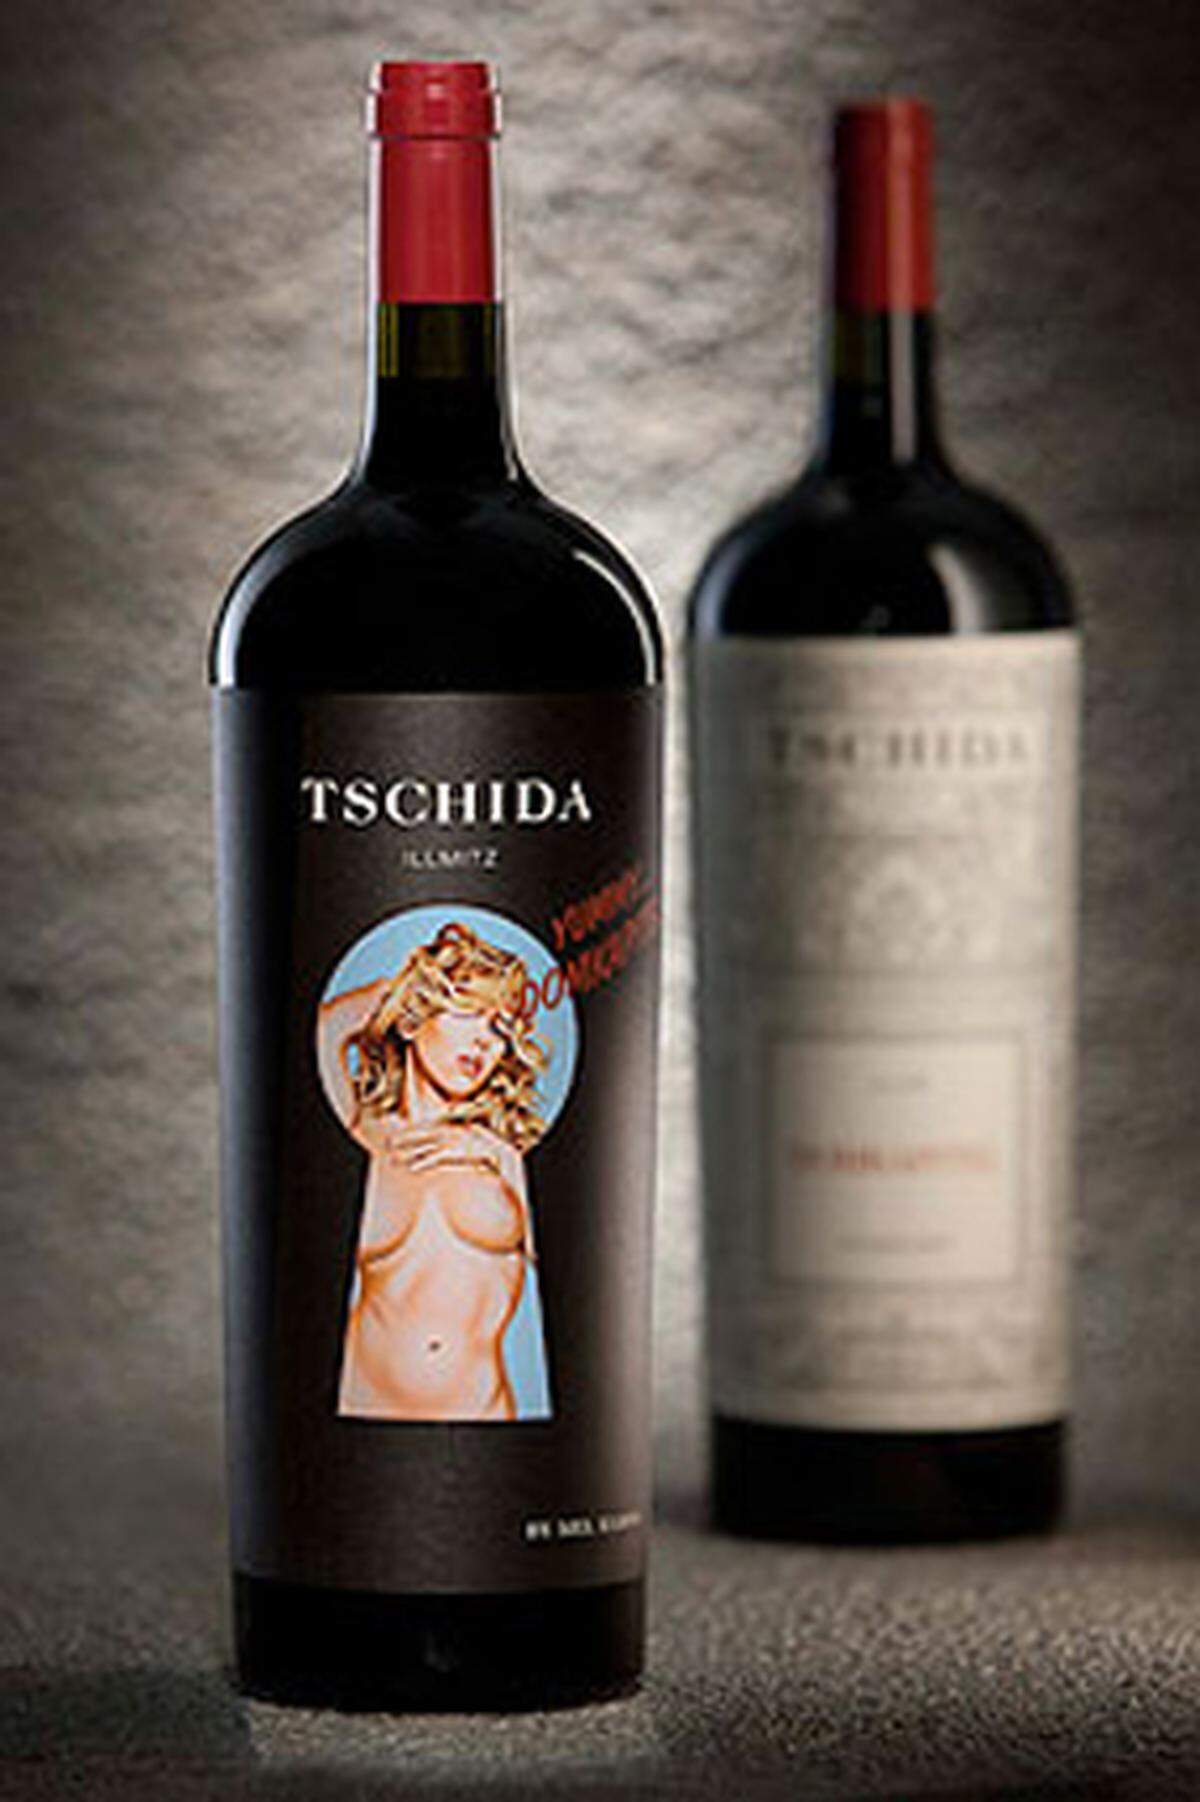 Ein üppiger Wein, eine üppige Flasche, ein üppiger Frauenkörper: Pin-Up-Künstler Mel Ramos gestaltete das Etikett für die Sonderedition Domkapitel 2009 von Christian Tschida. 666 Magnumflaschen gibt es mit diesem Etikett.